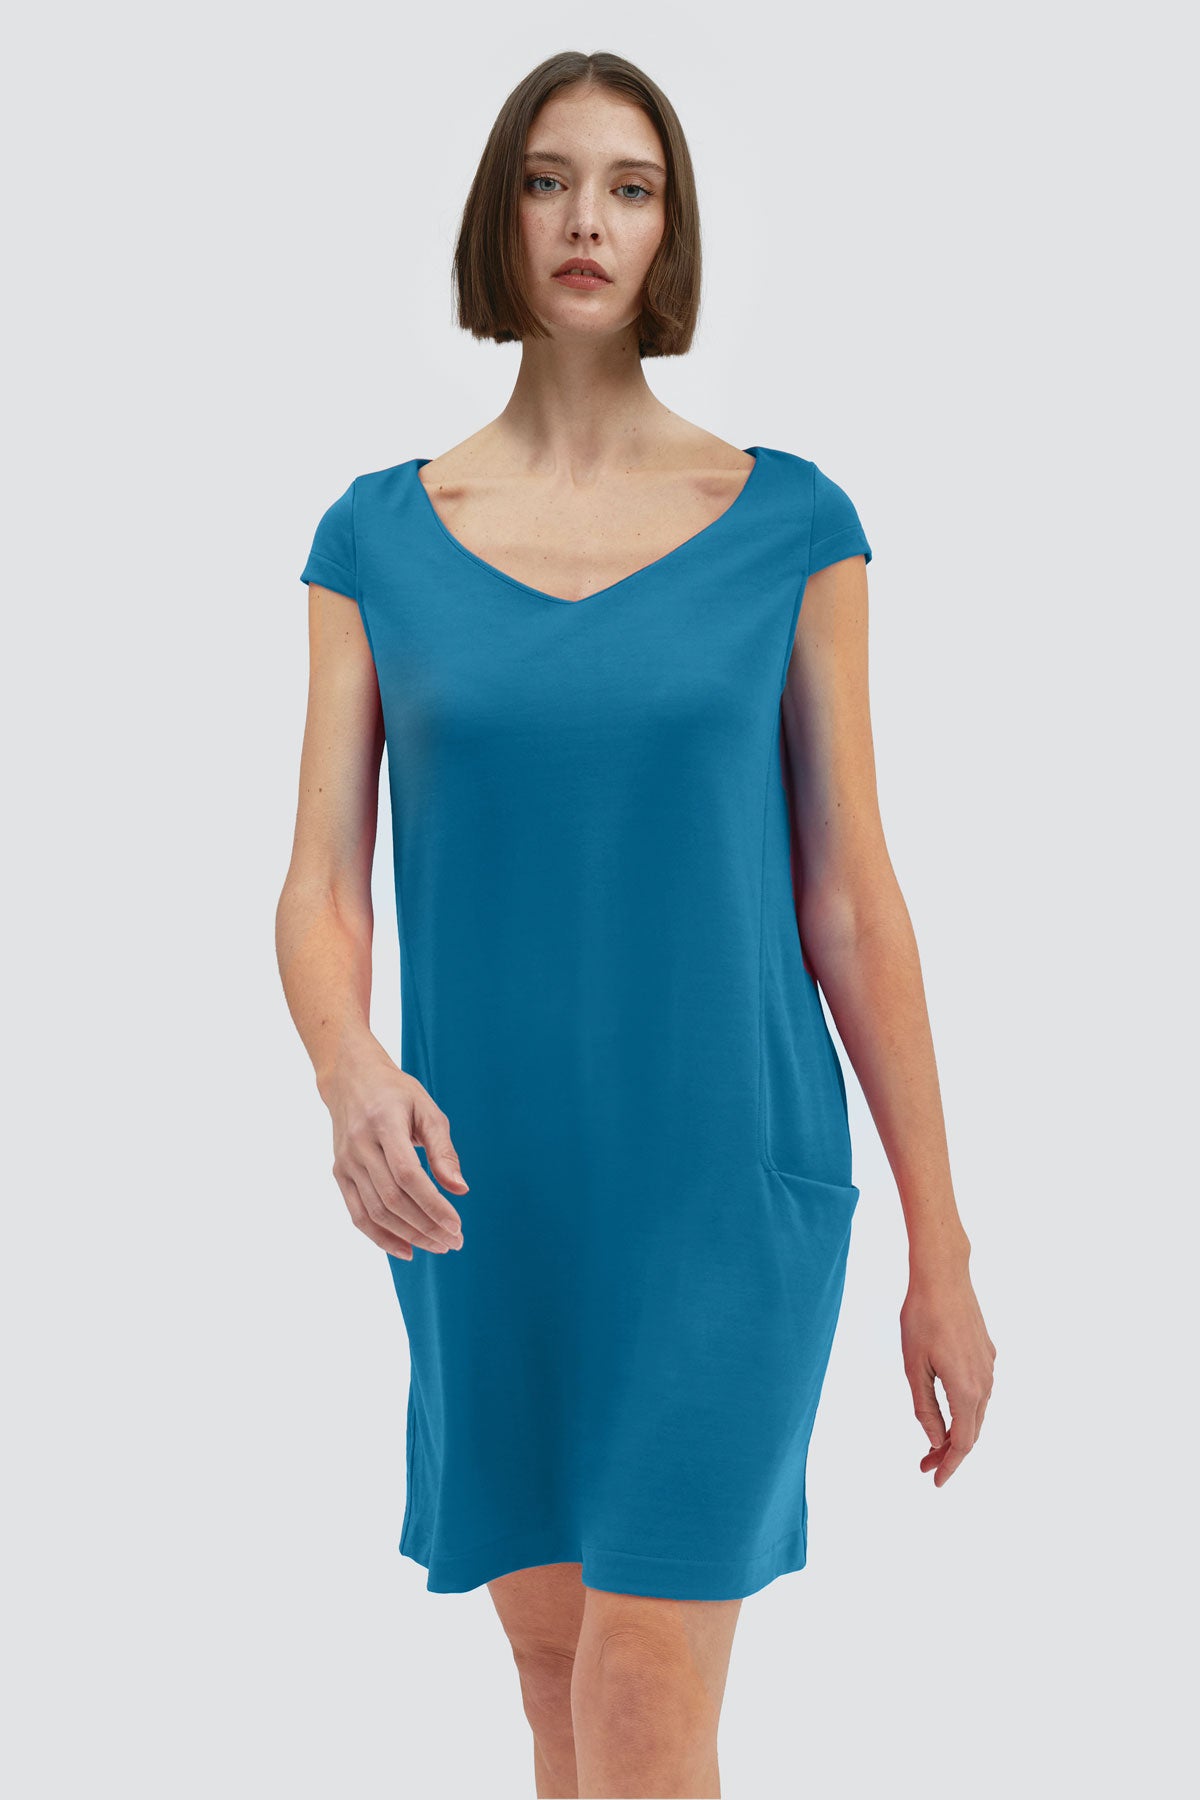 Vestido holgado de mujer con cuello redondo y bolsillos. Un vestido perfecto para mujer en verano, un básico de fondo de armario en color azul